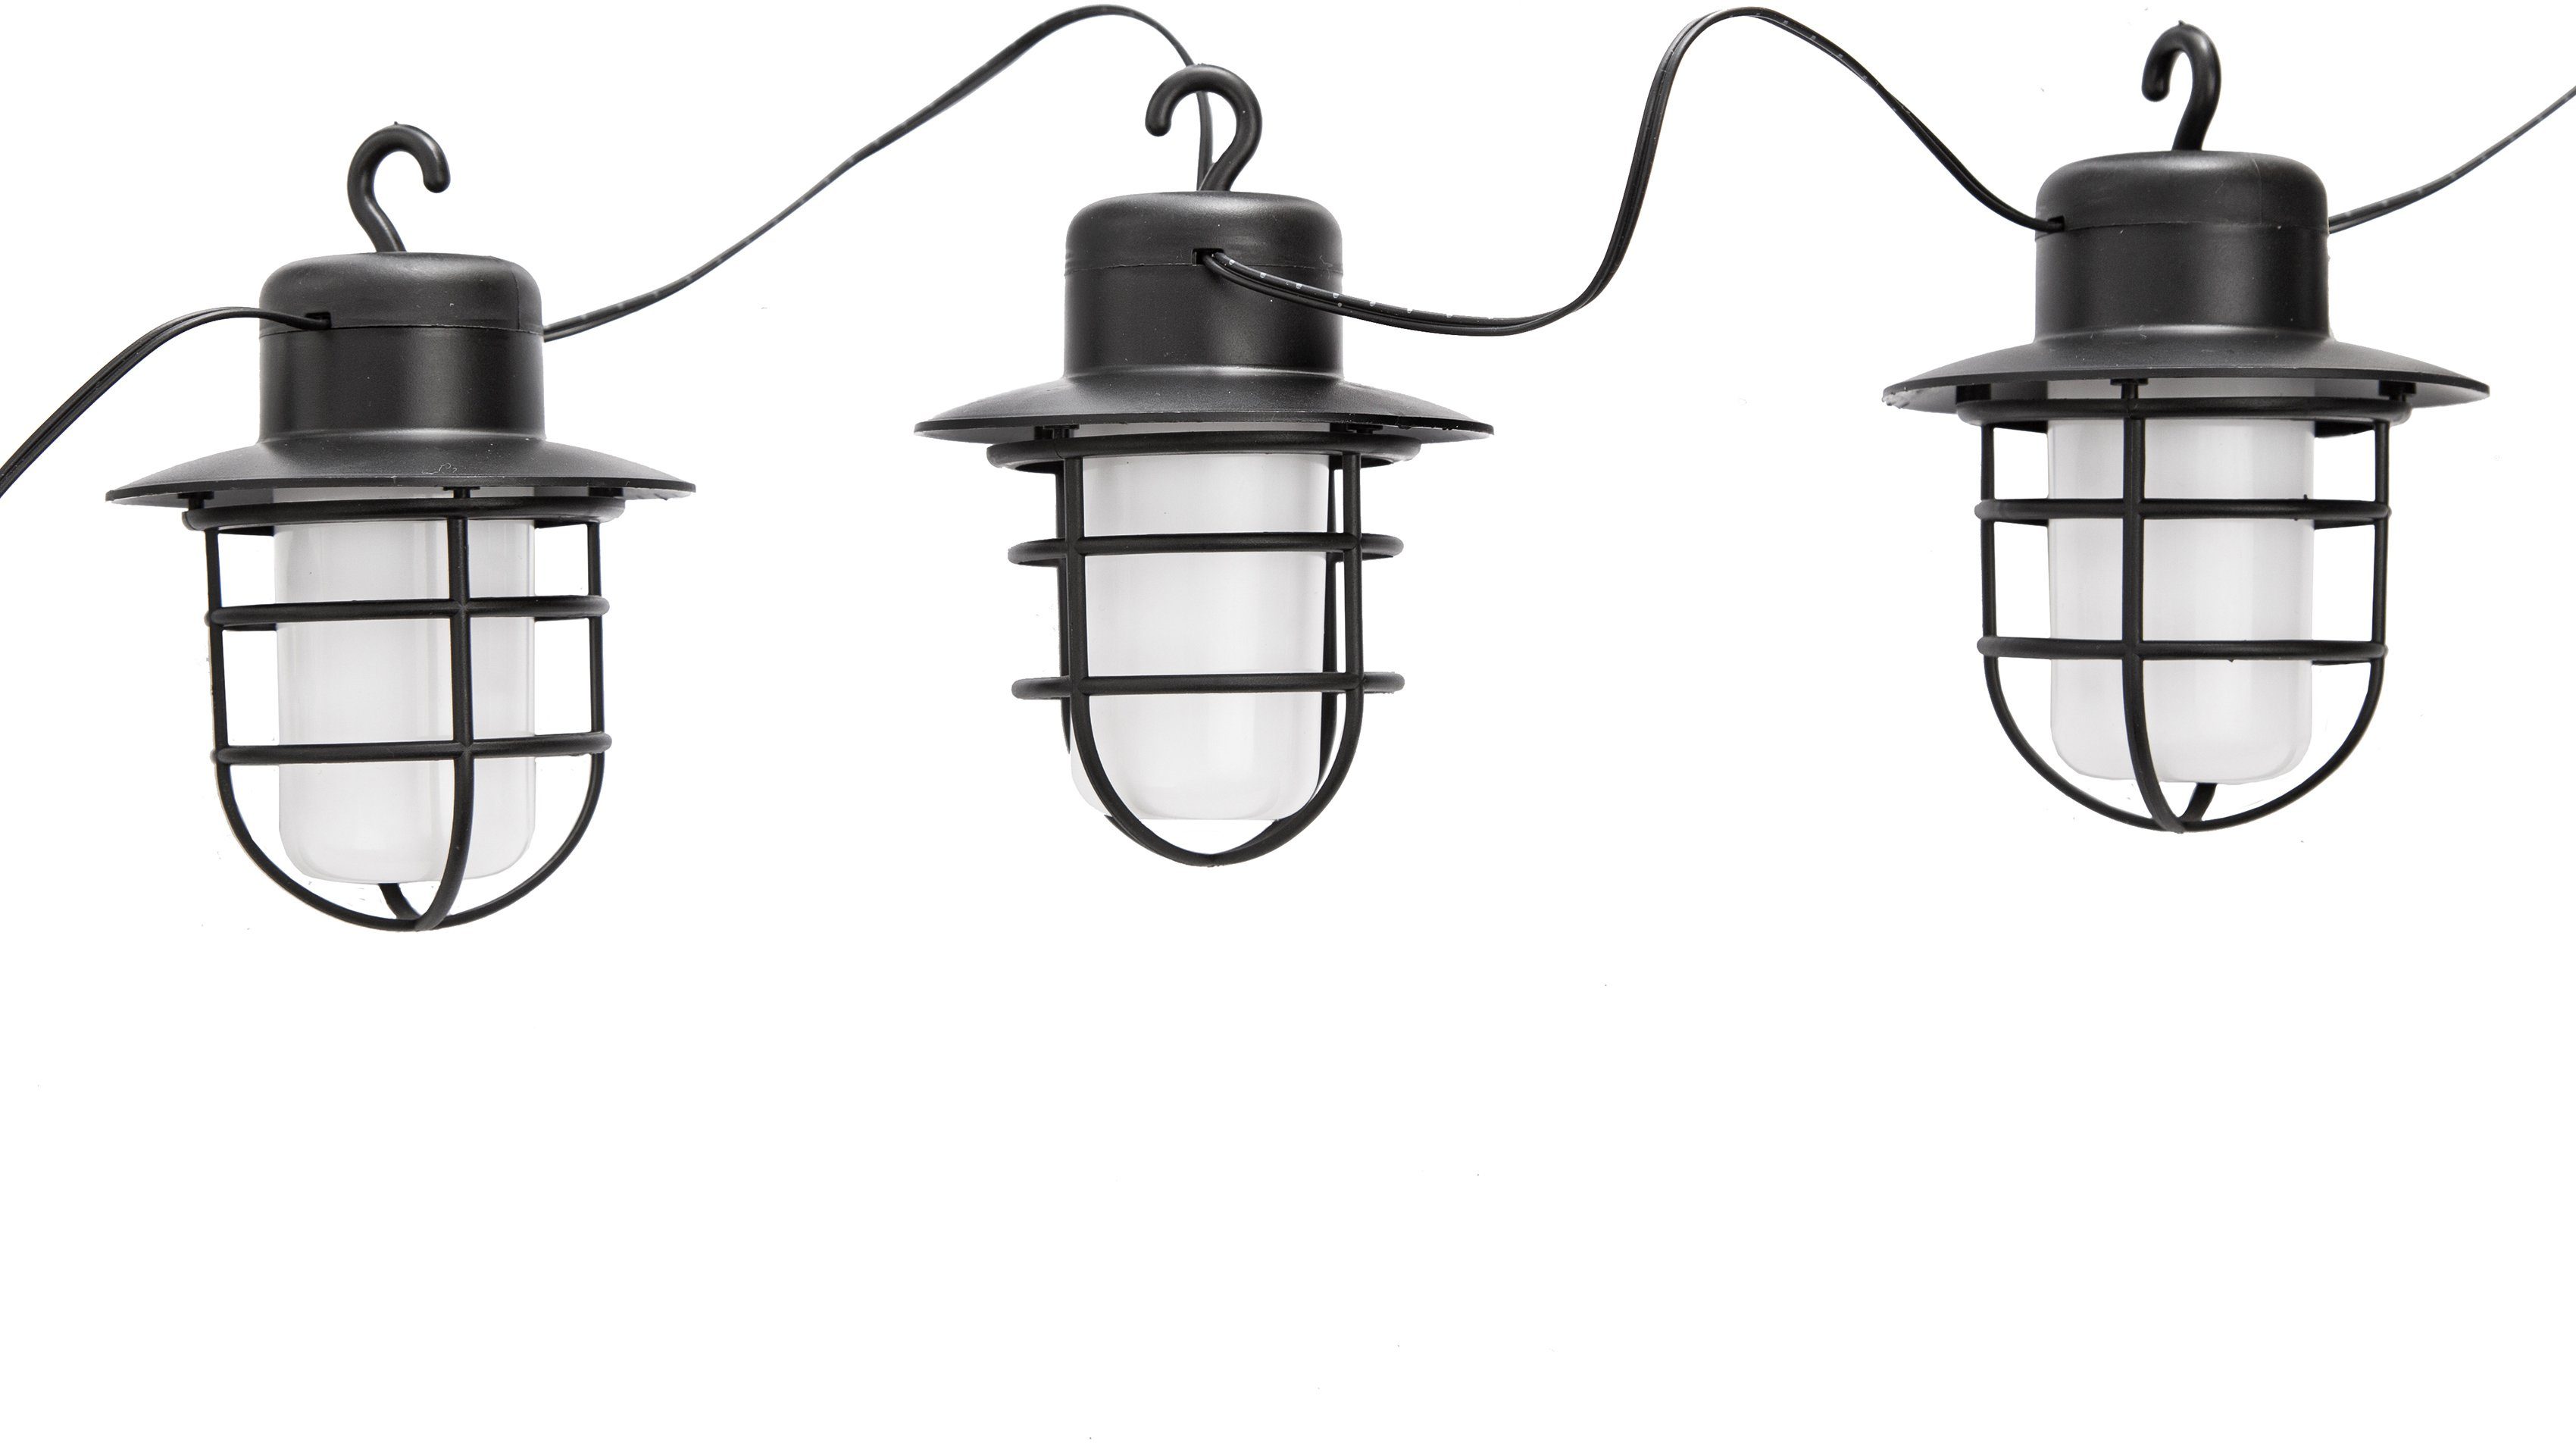 Nino Leuchten LED-Lichterkette Rome, 8-flammig, 8 Mini-Laternen mit  Flammeneffekt, schwarz